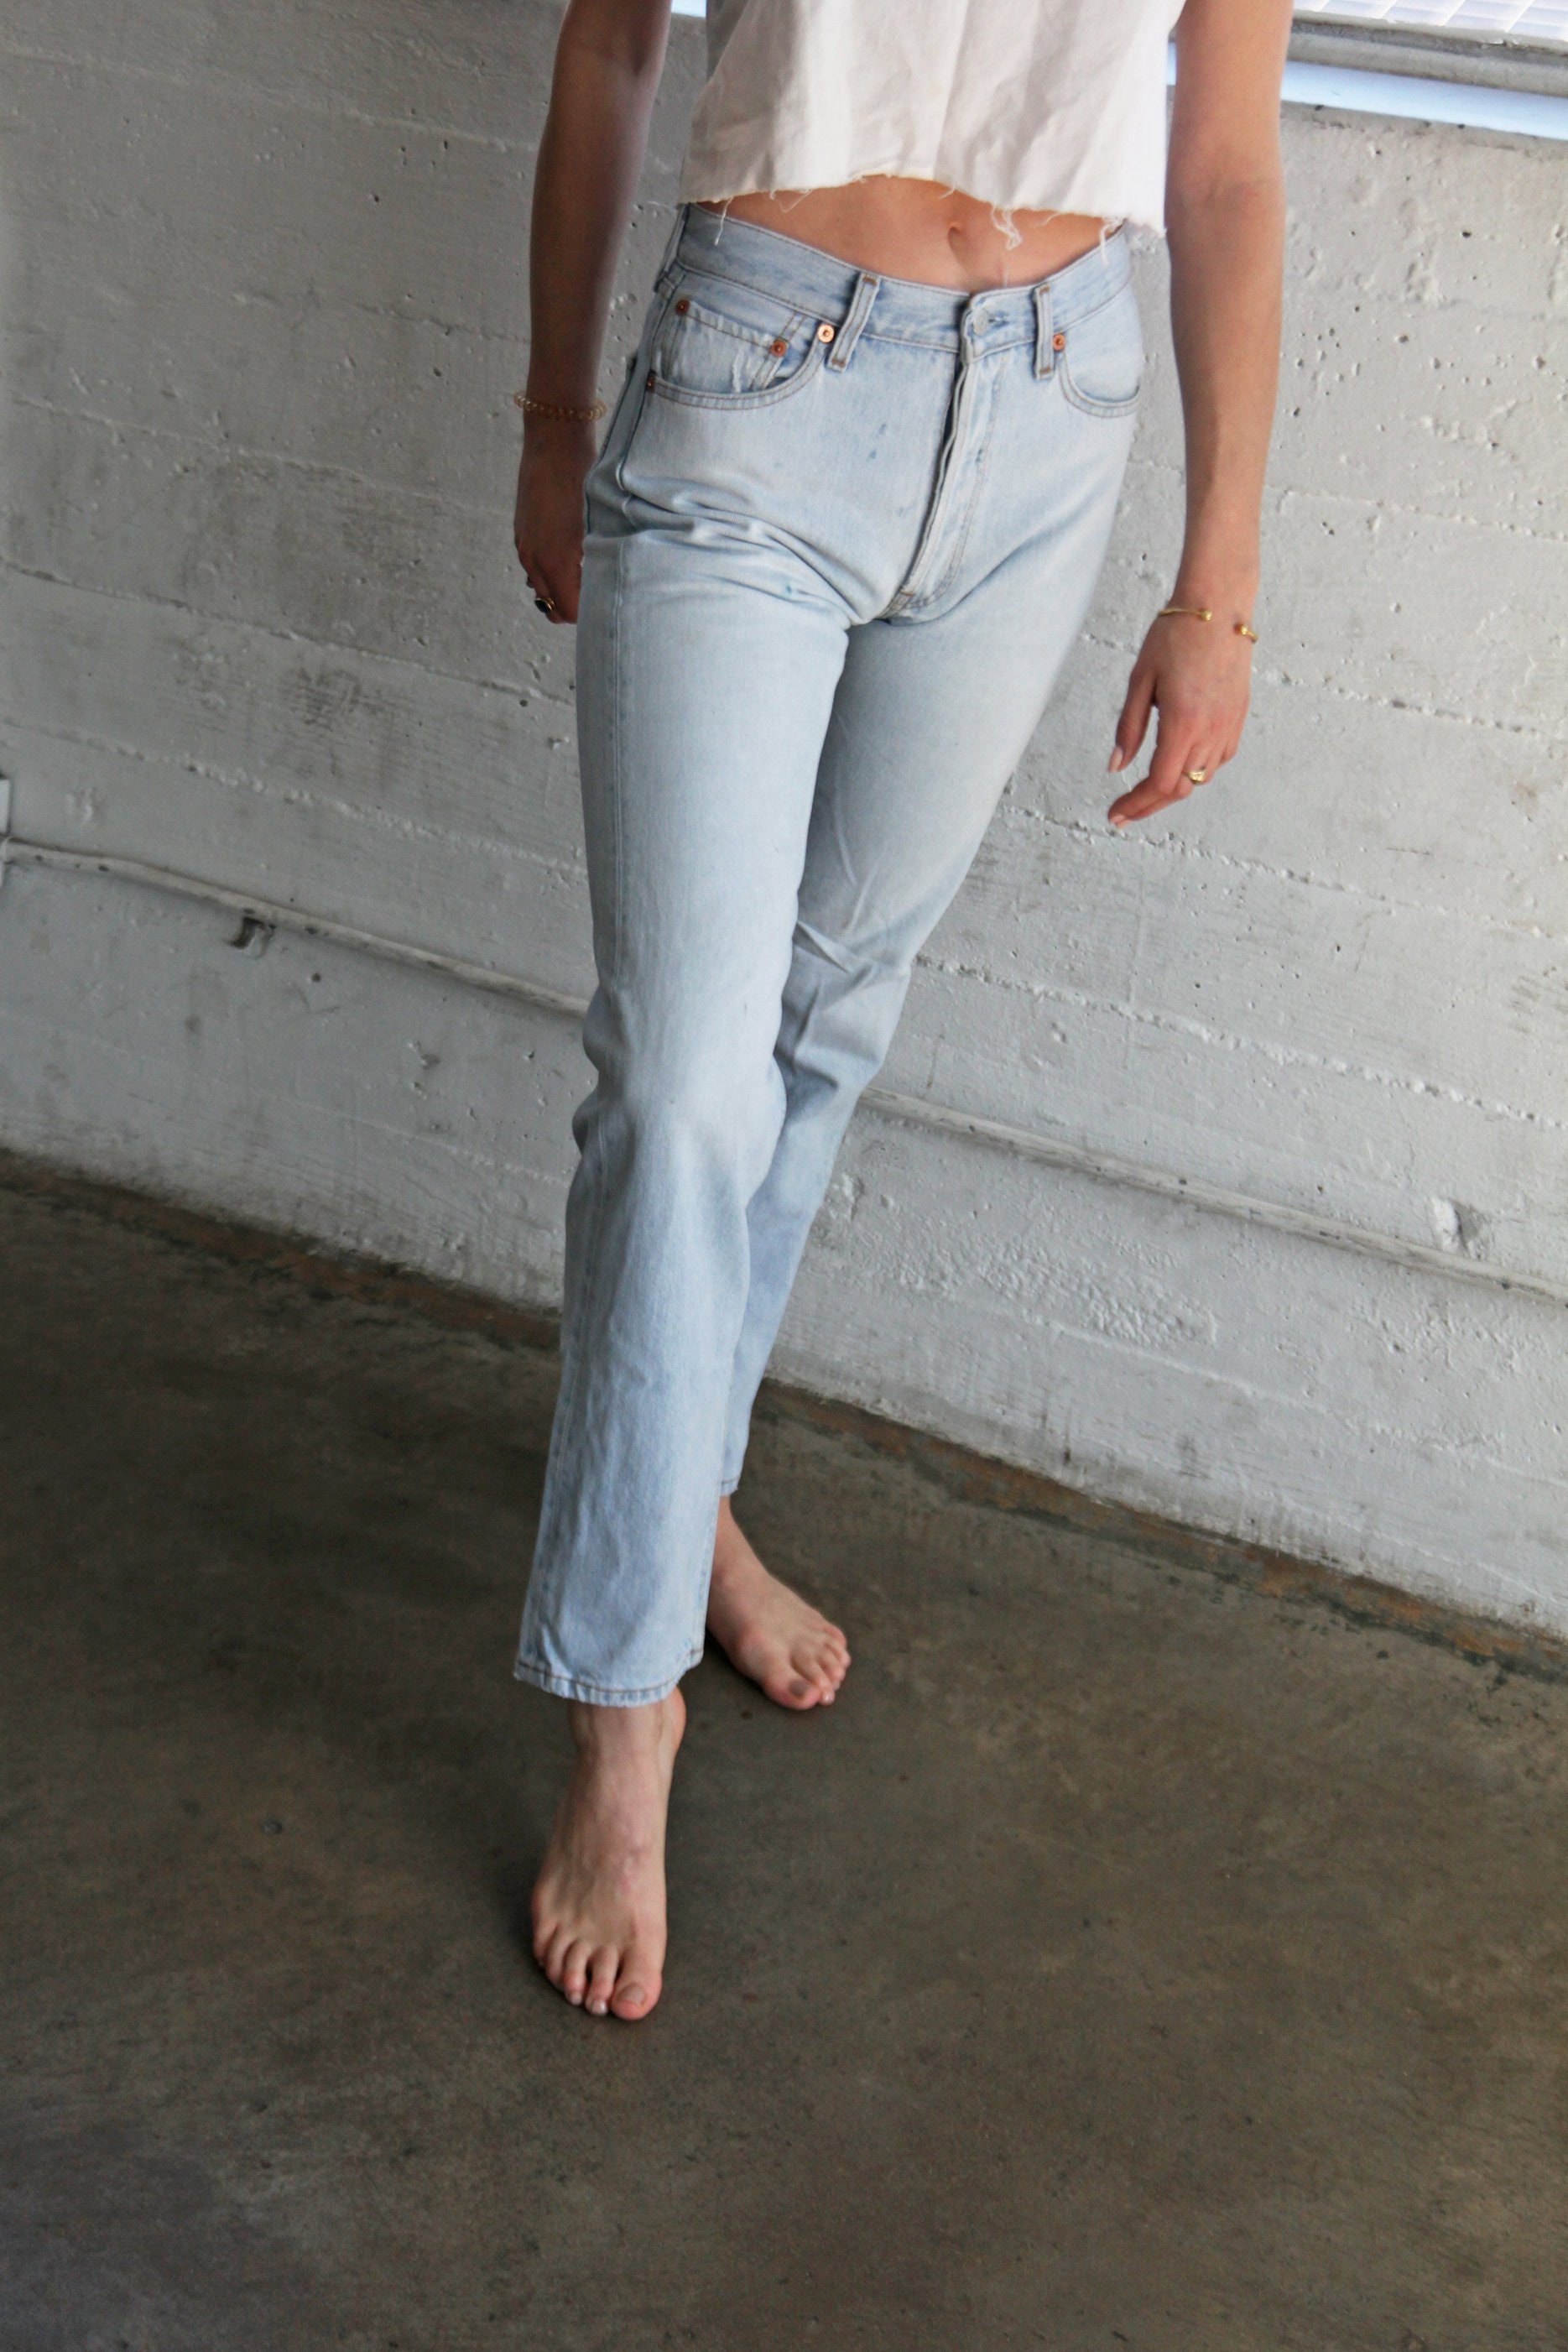 LEVI'S 501 Jeans